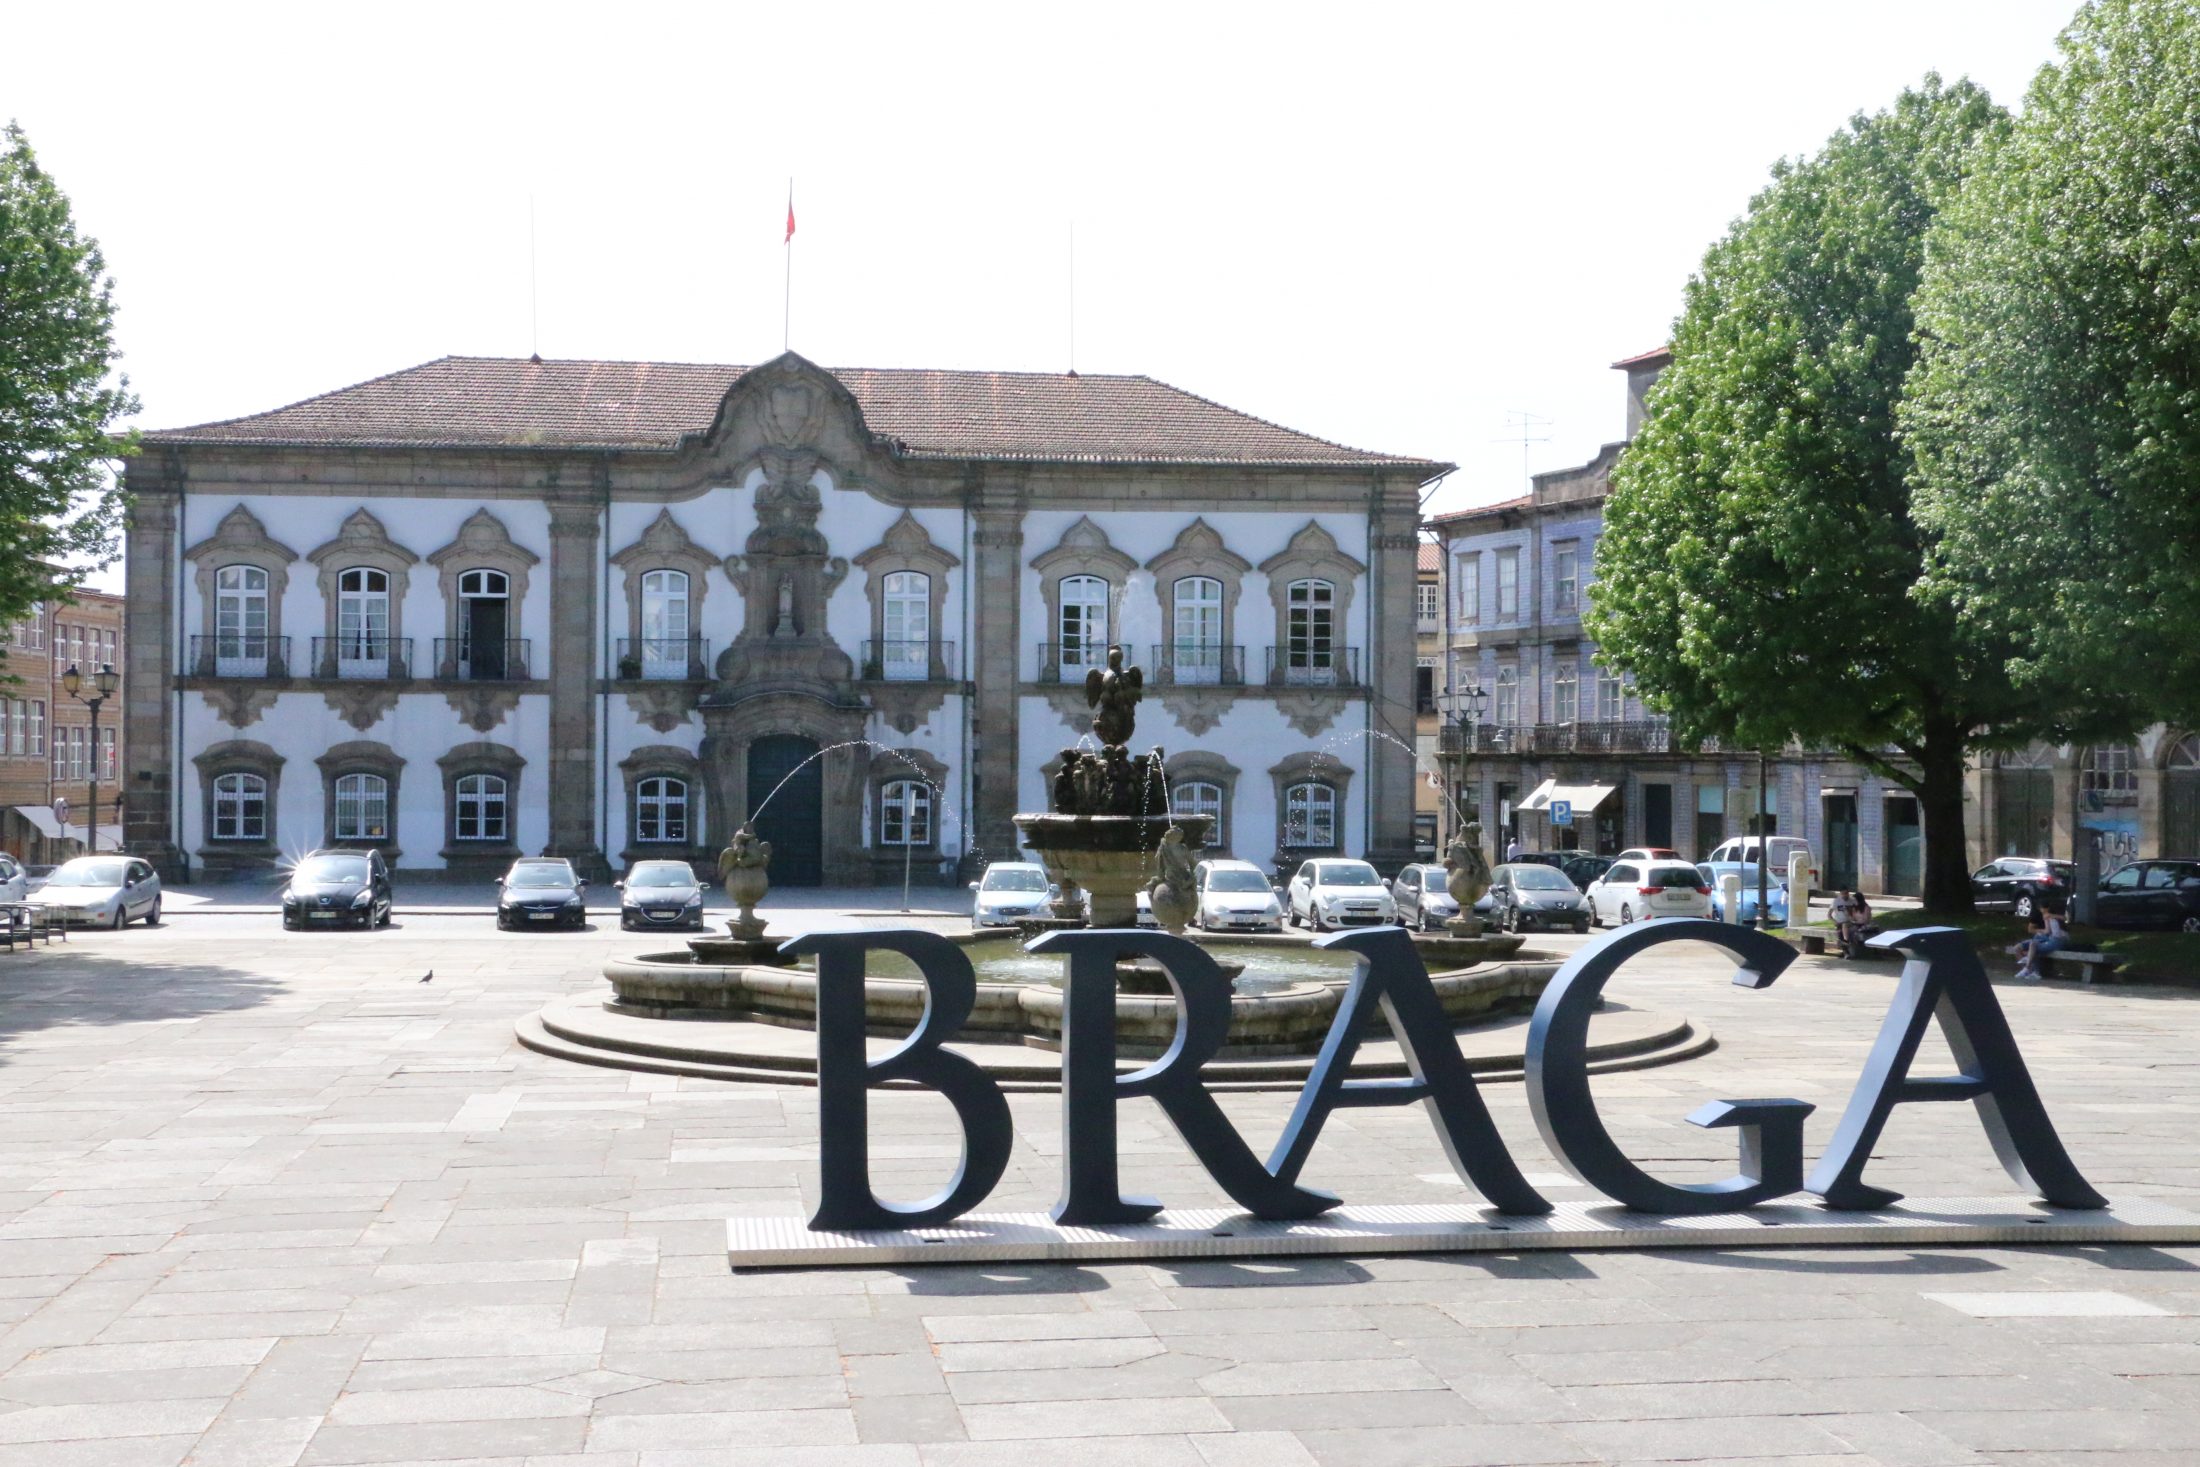 Património classificado de Braga tem 8 milhões para requalificação